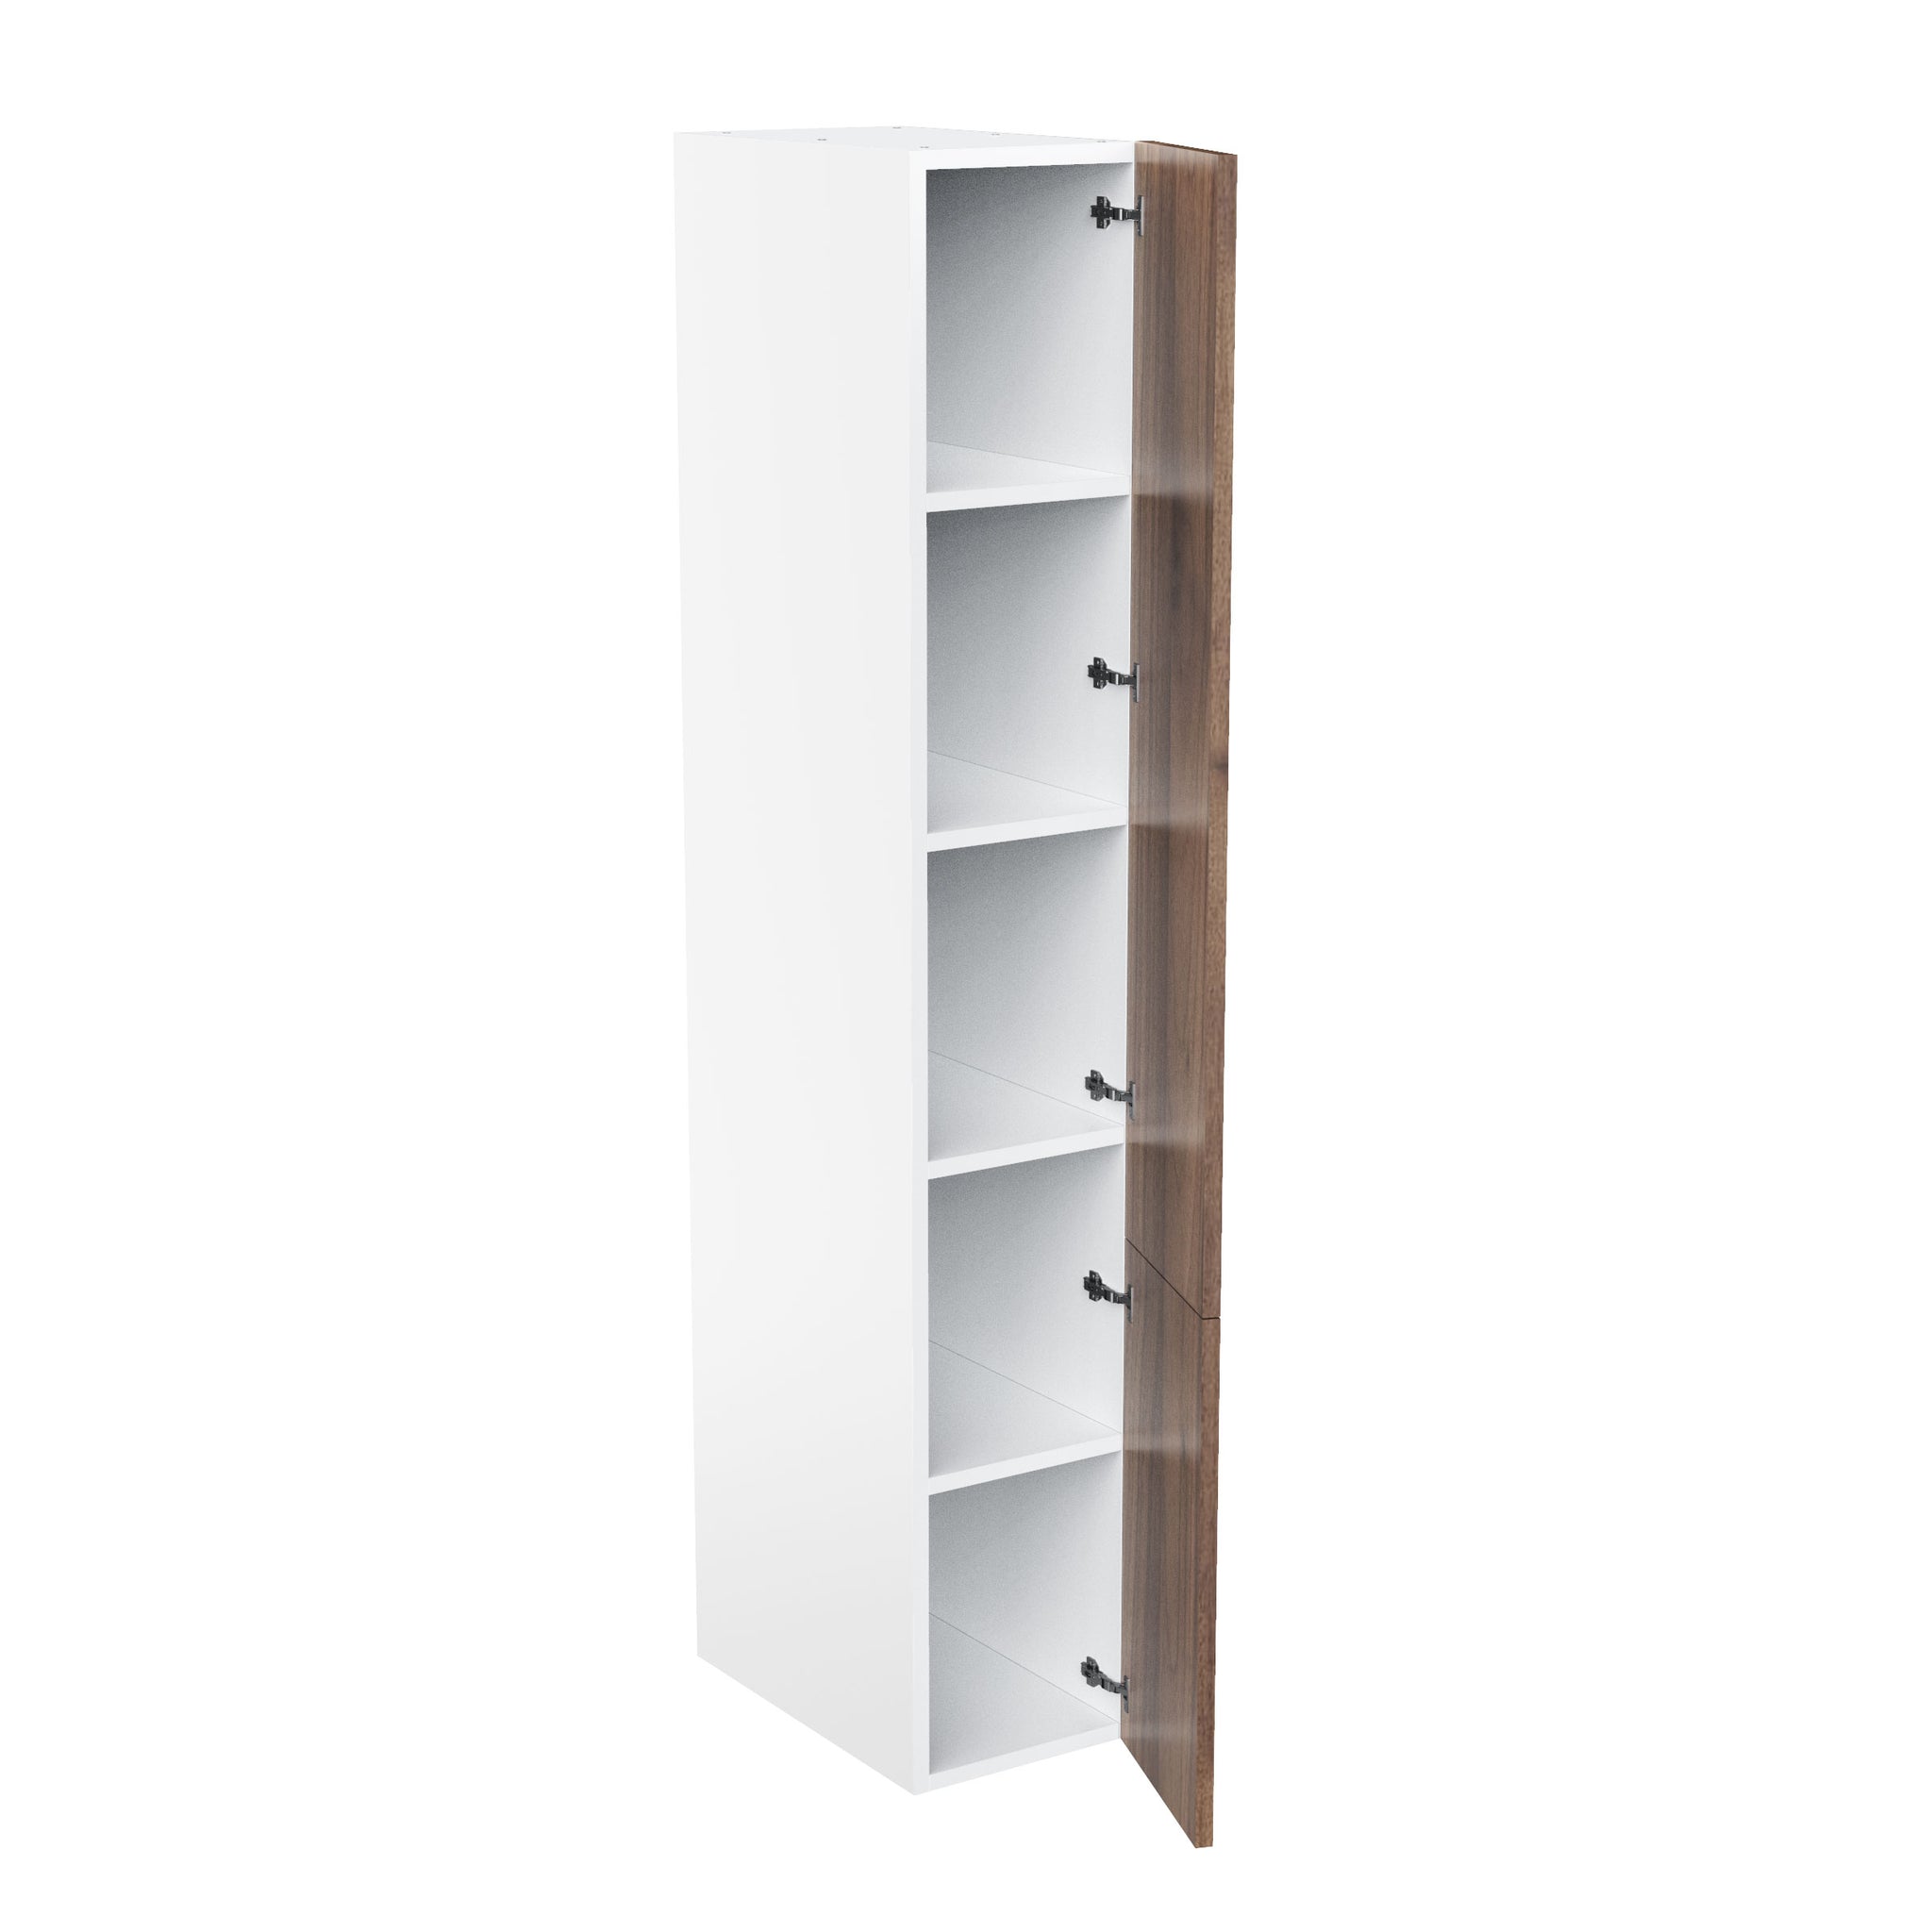 RTA - Walnut - Single Door Tall Cabinets | 15"W x 90"H x 24"D